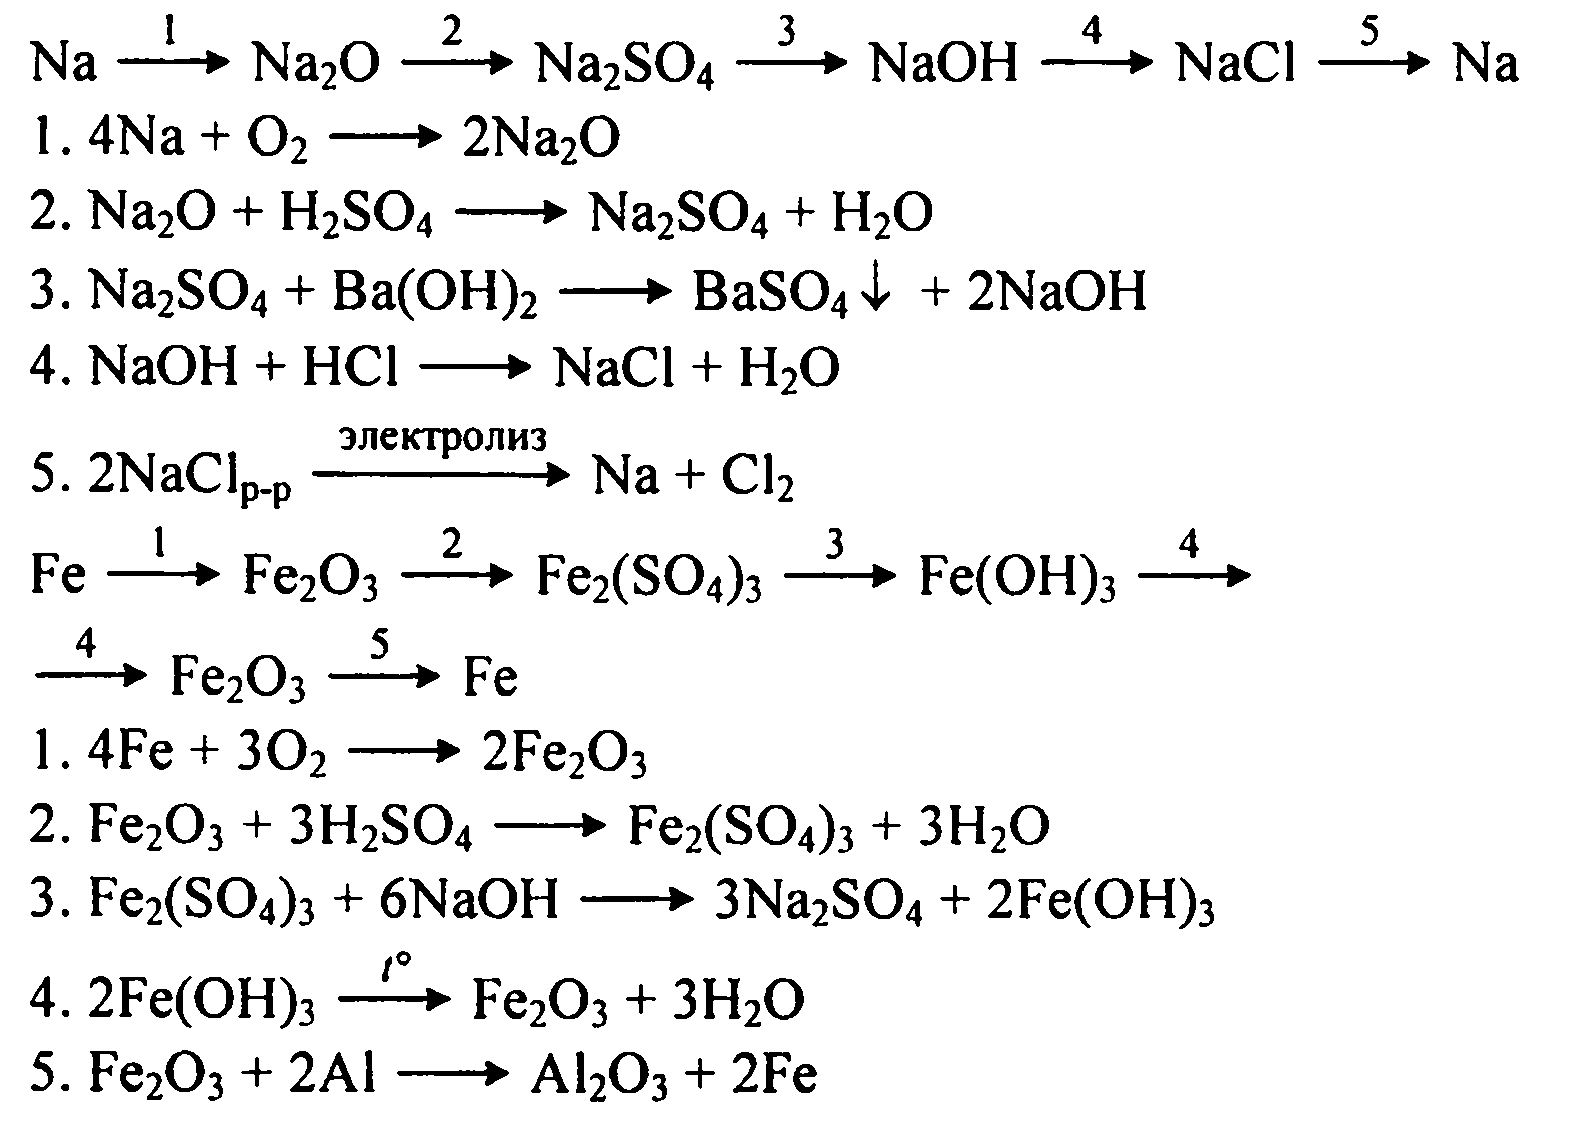 Цепочка превращений натрий гидроксид натрия нитрат натрия